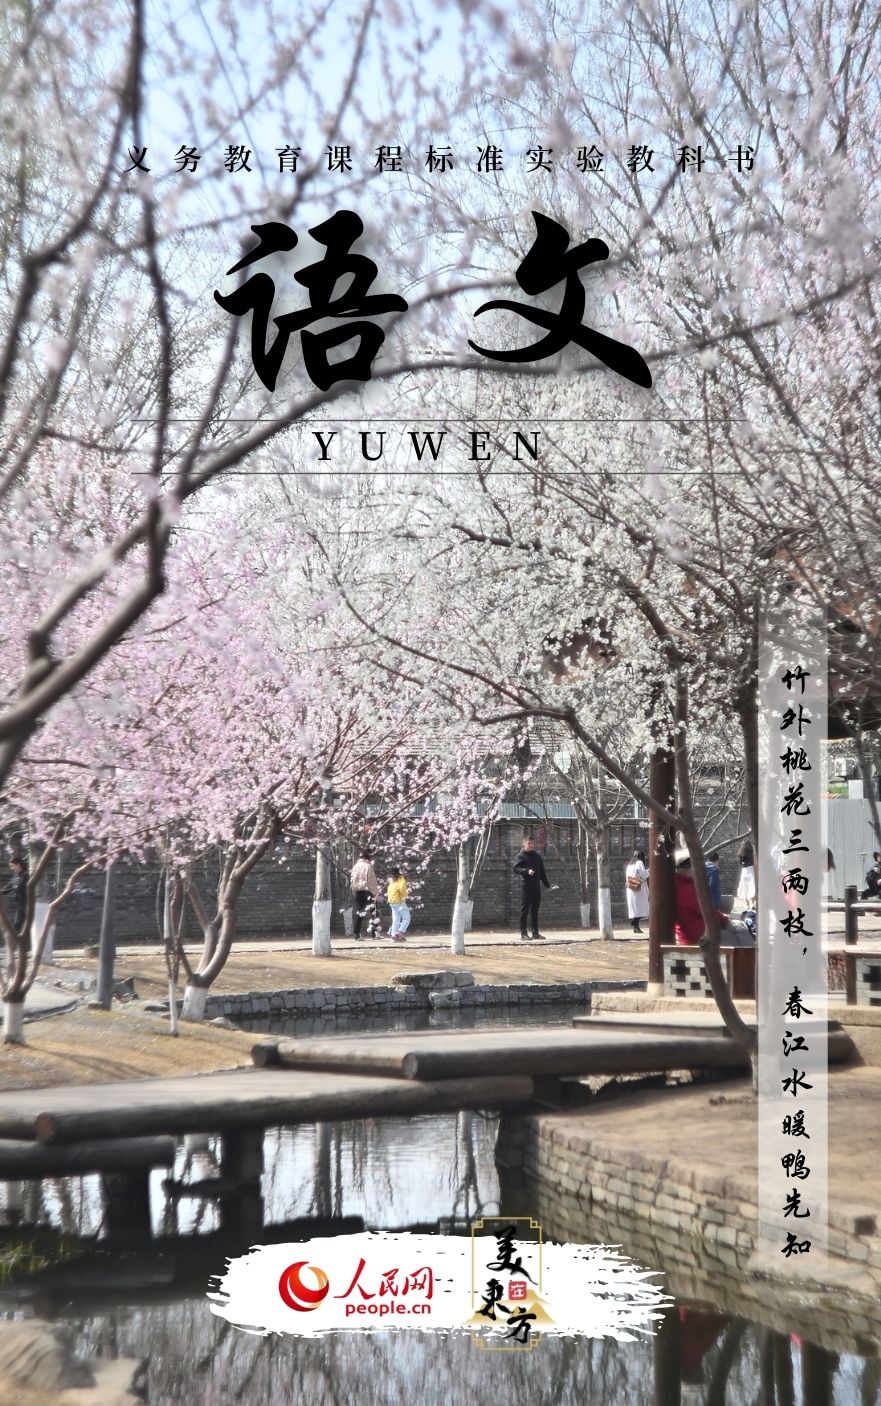 北京三里河公园内春桃竞相开放。图片来源于视觉中国</p><p style=